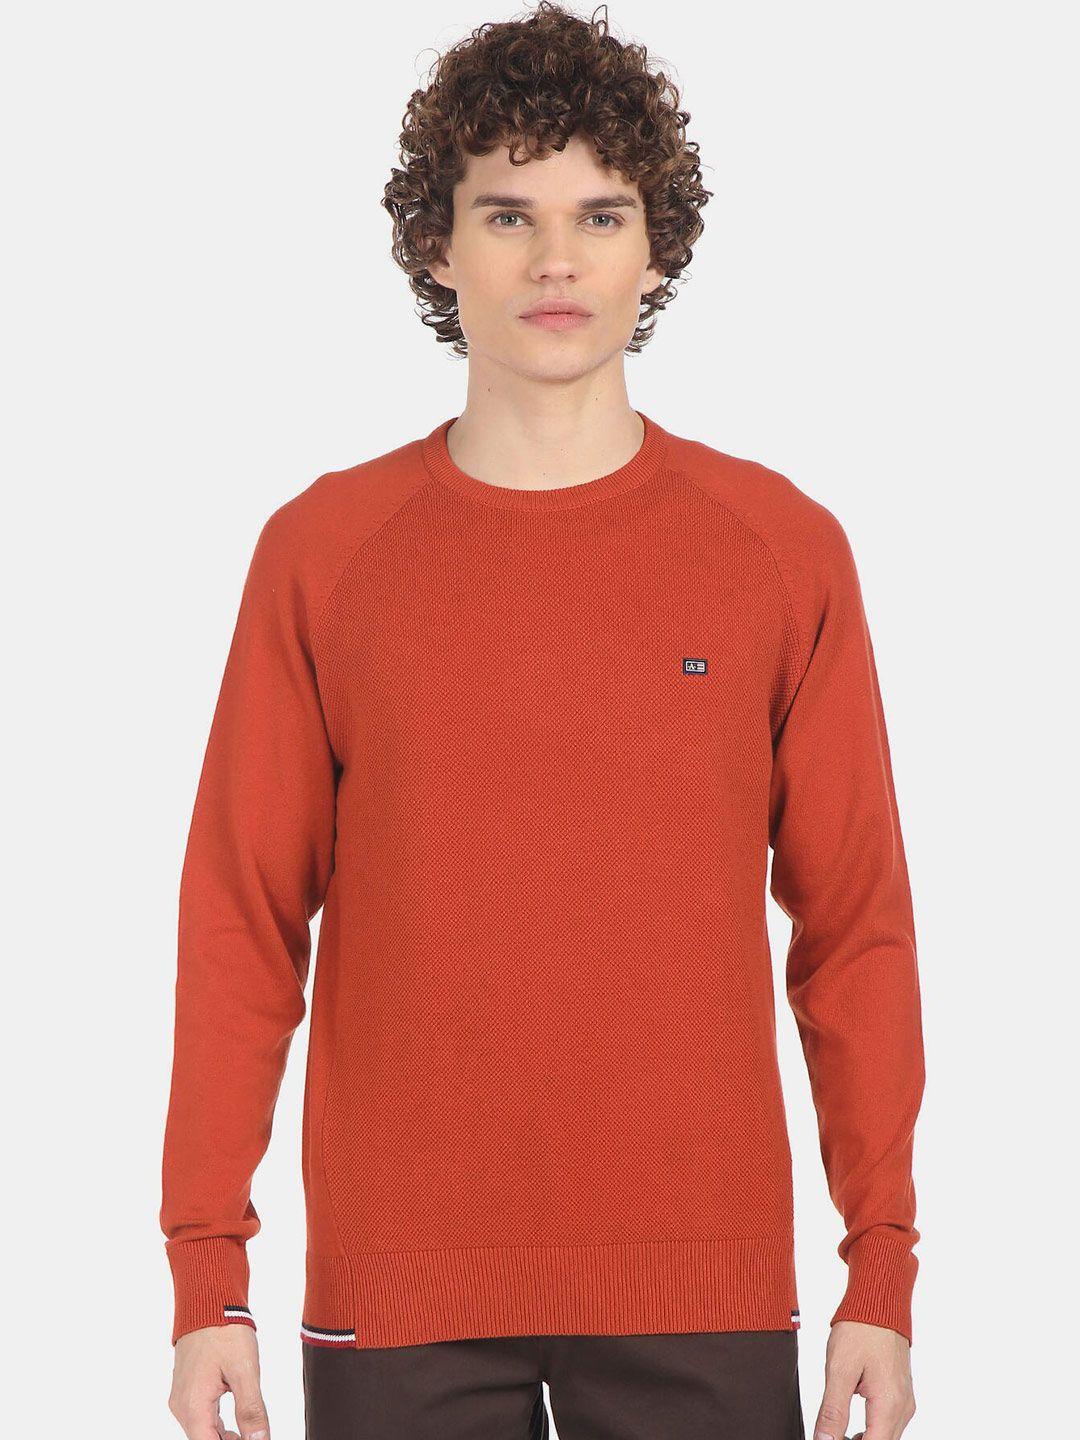 arrow sport men orange sweaters